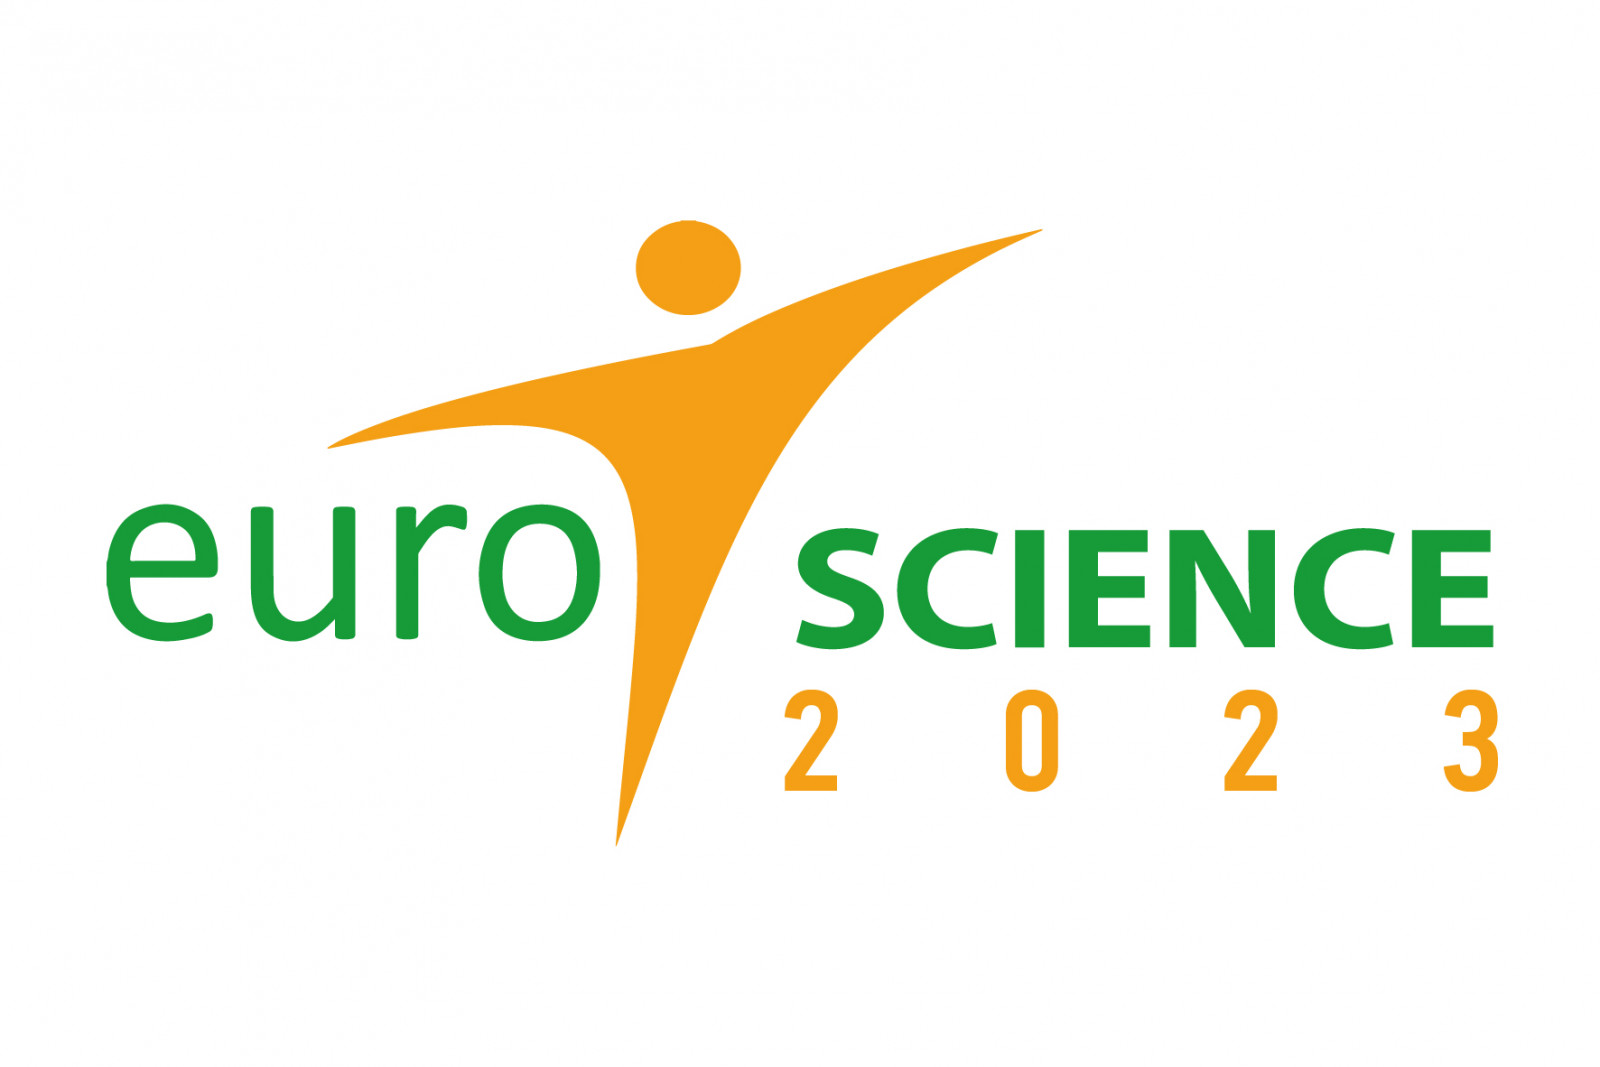 Euroscience Logo